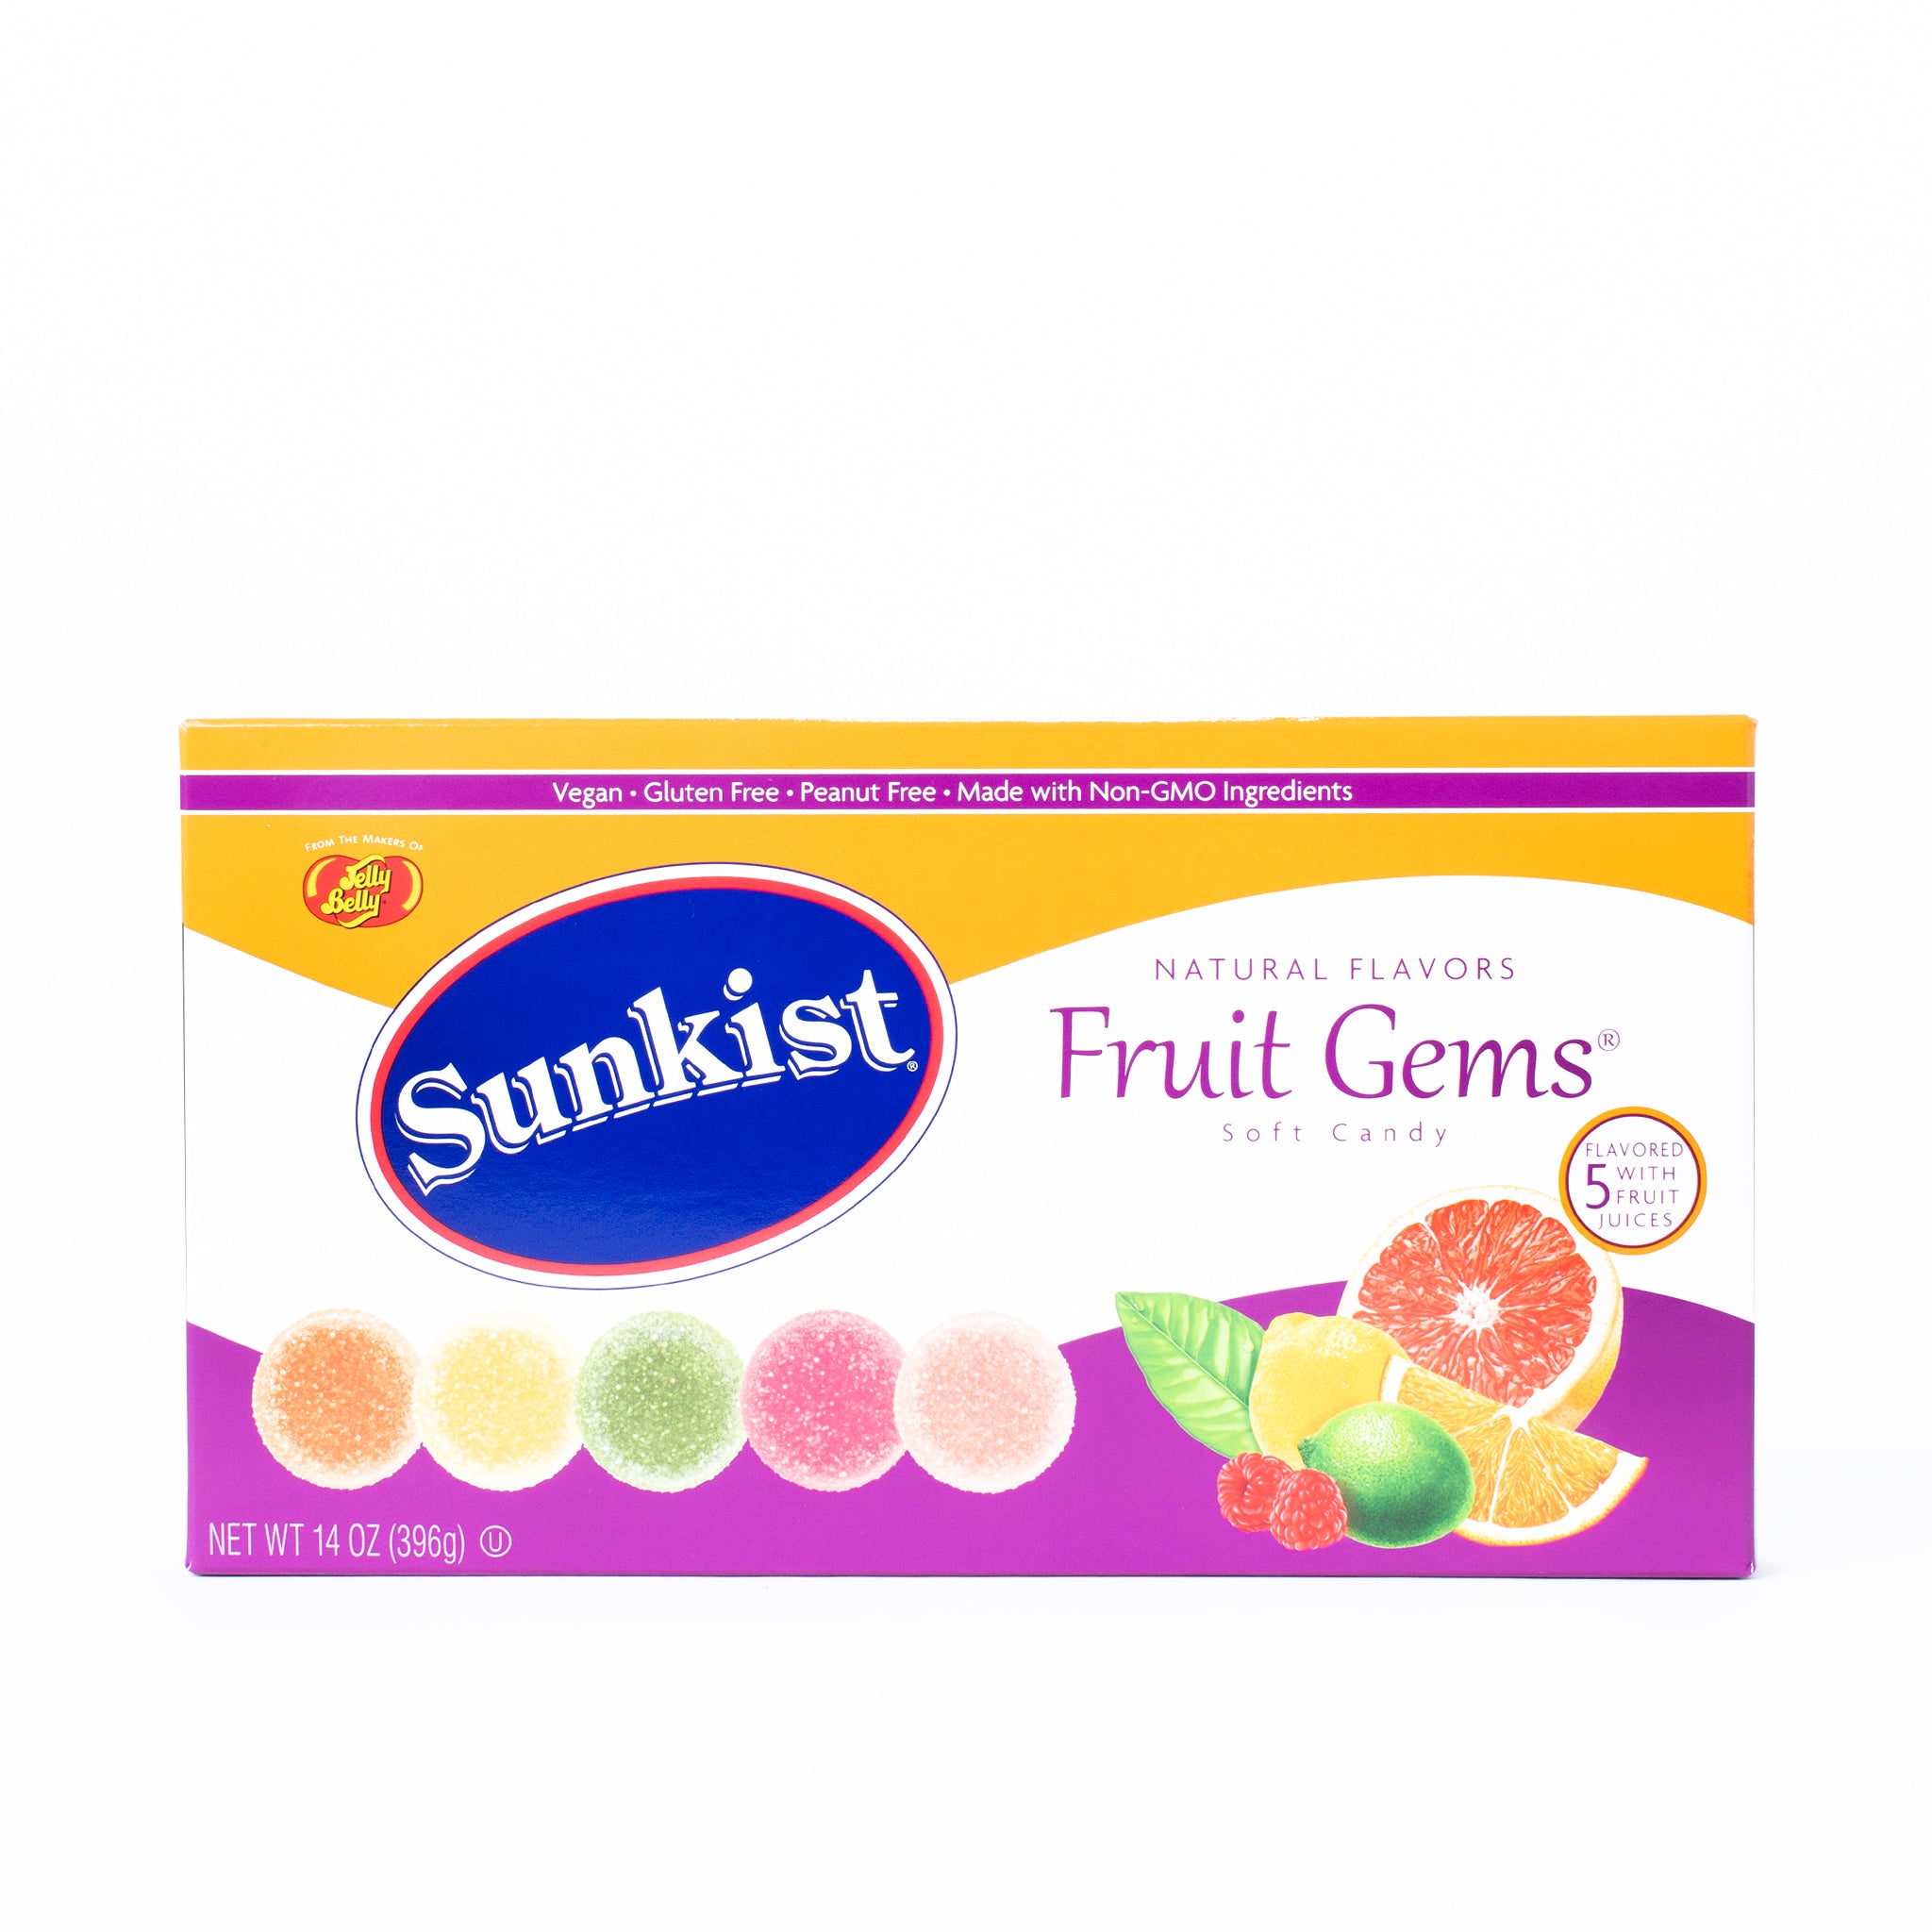 sunkist fruit gems ingredients dairy free